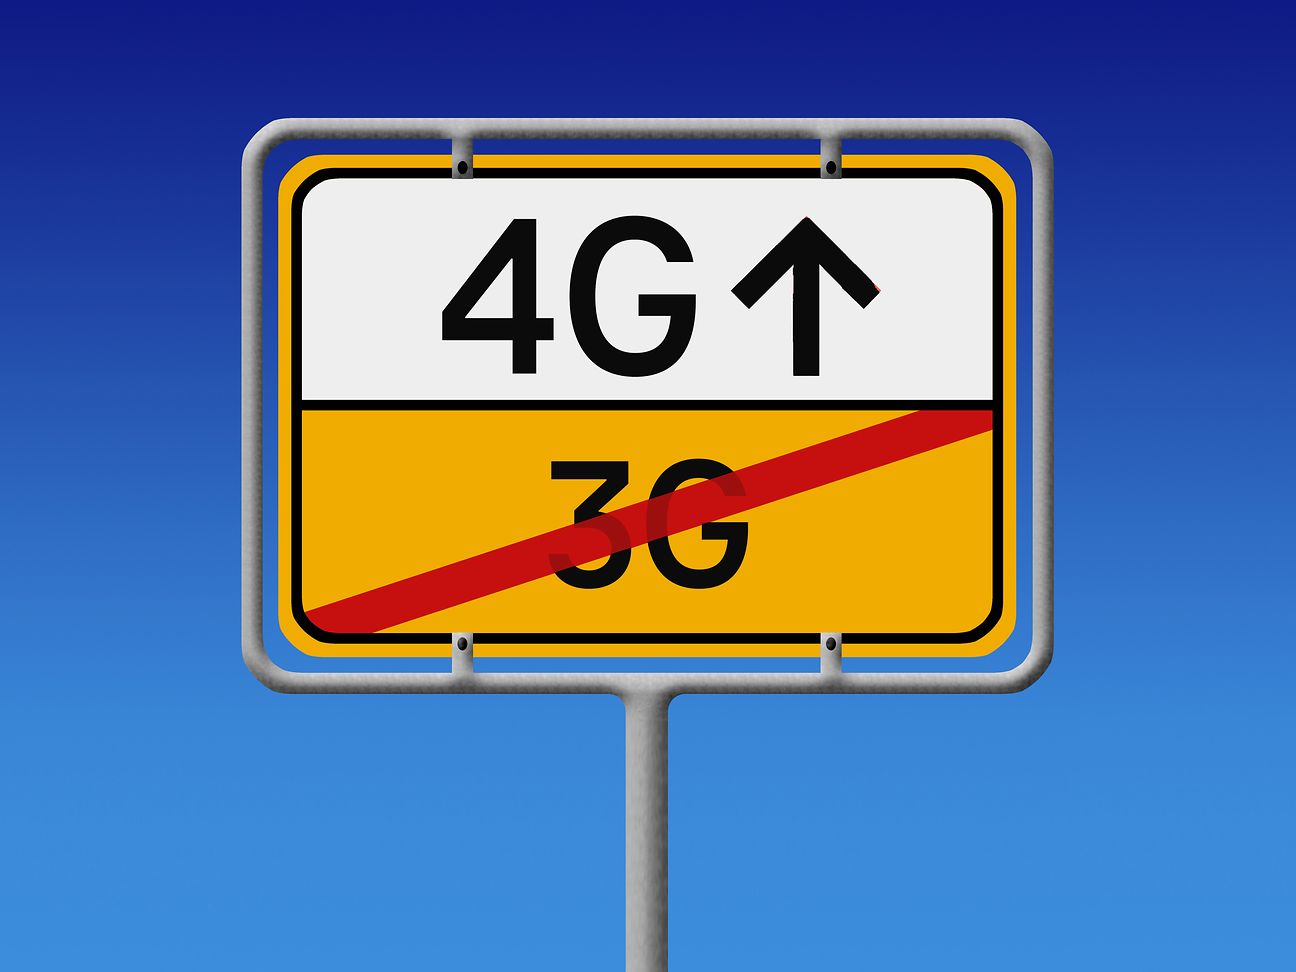 Telekom mit 3G Abschaltung: Telekom wird altes 3G UMTS Netz abschalten